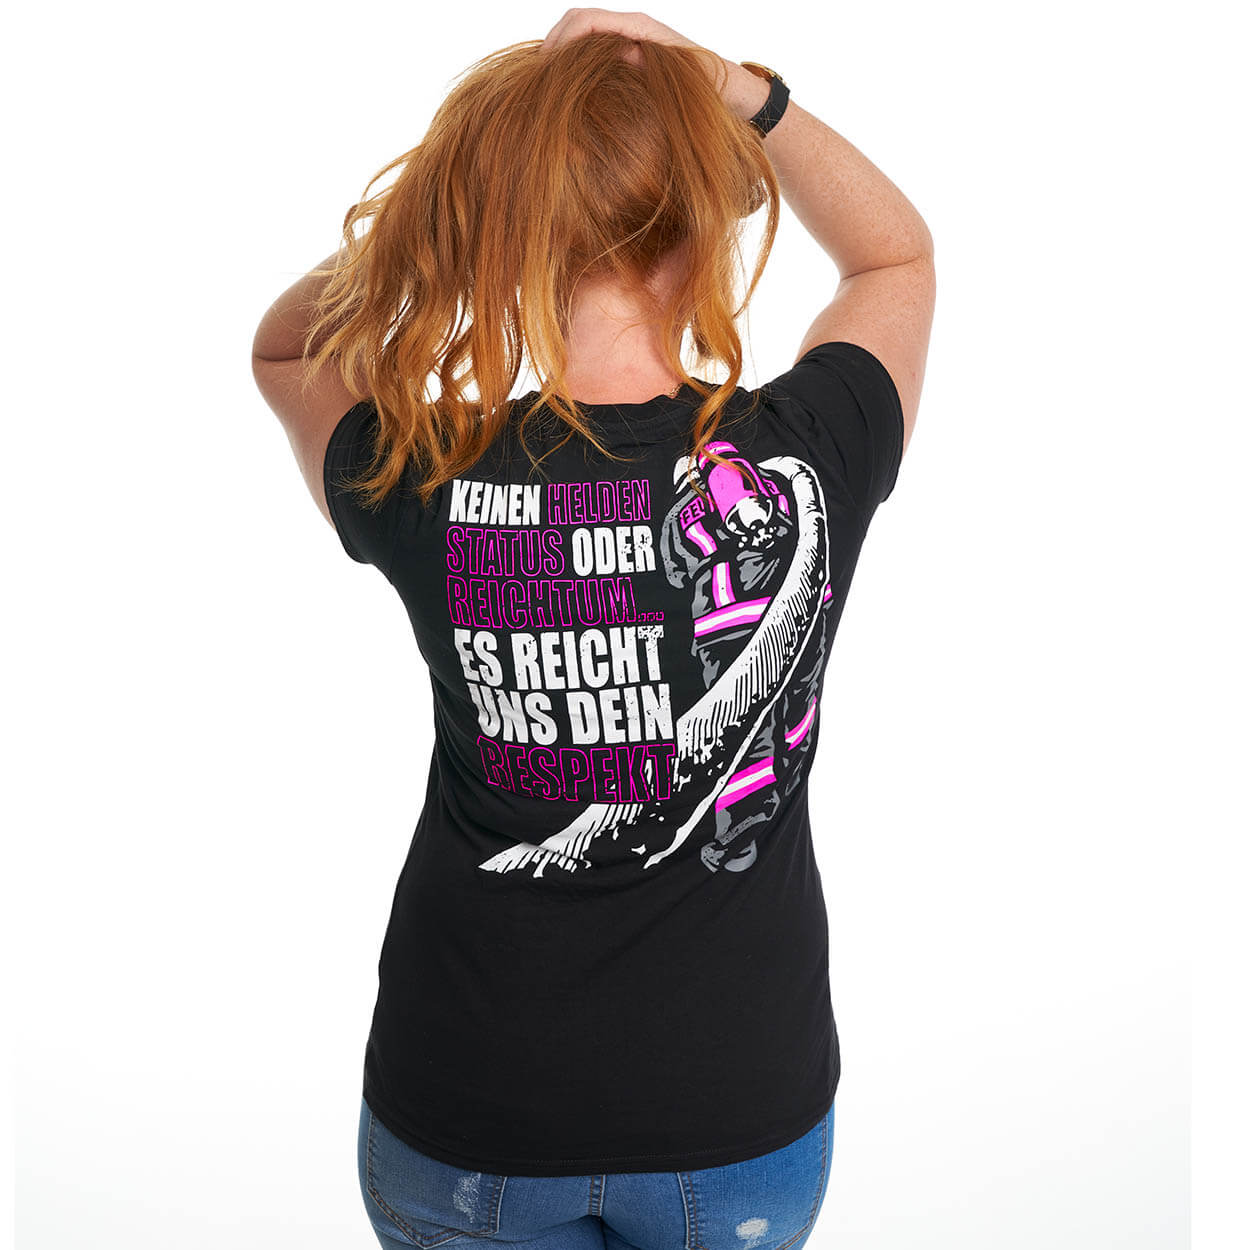 Dein Respekt, keinen Reichtum - Frauen T-Shirt schwarz